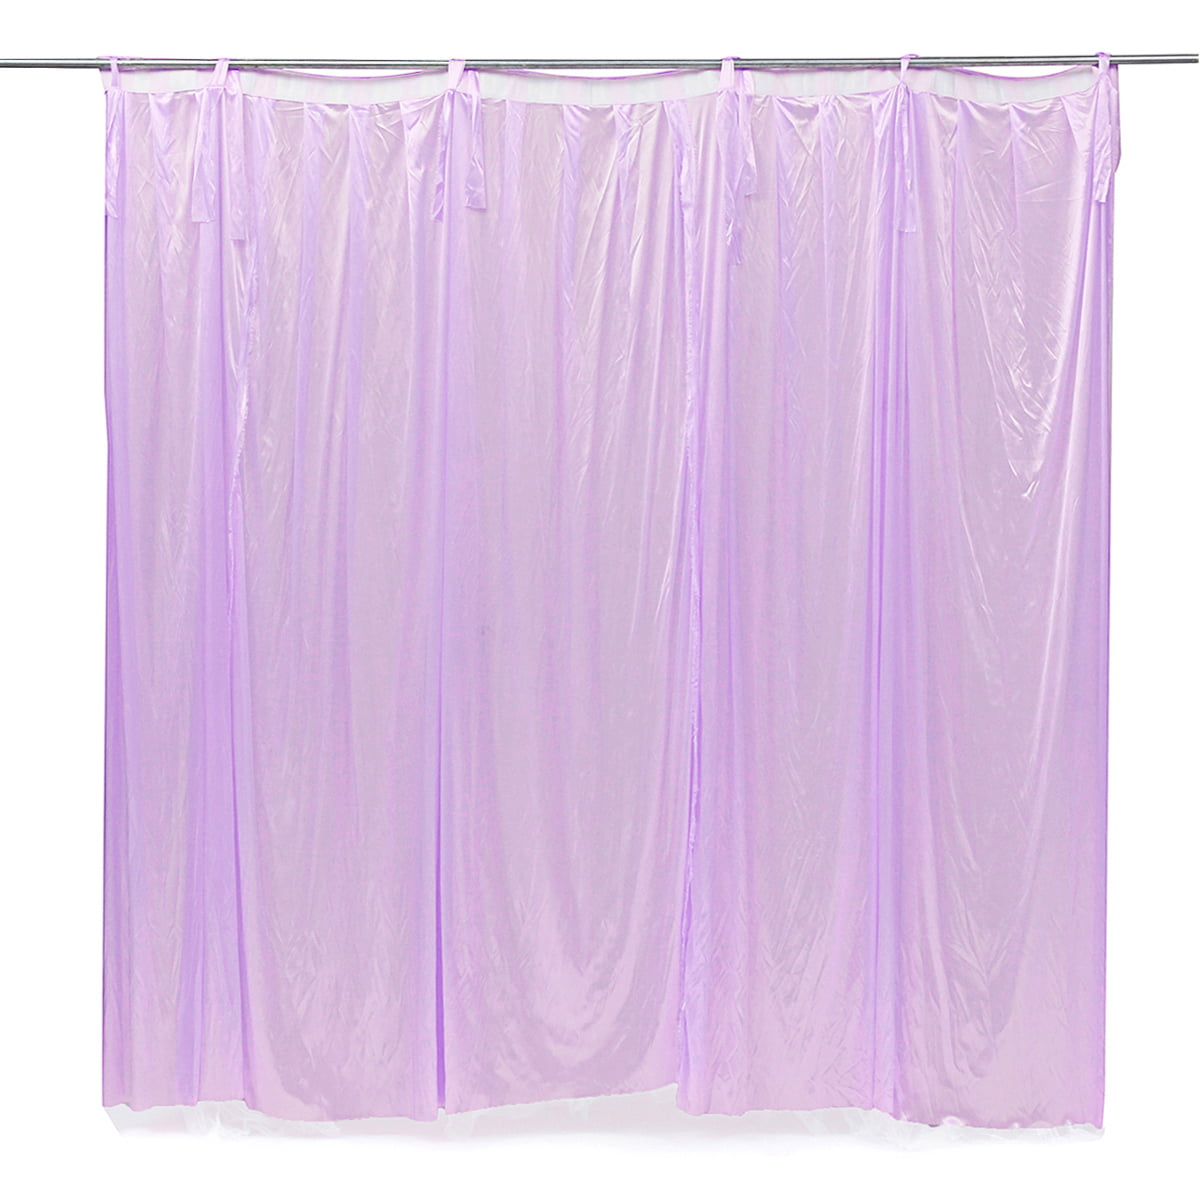 12 ft H Long Solid White Velvet Curtain Panel Movie Studio Backdrop Prop Drape 